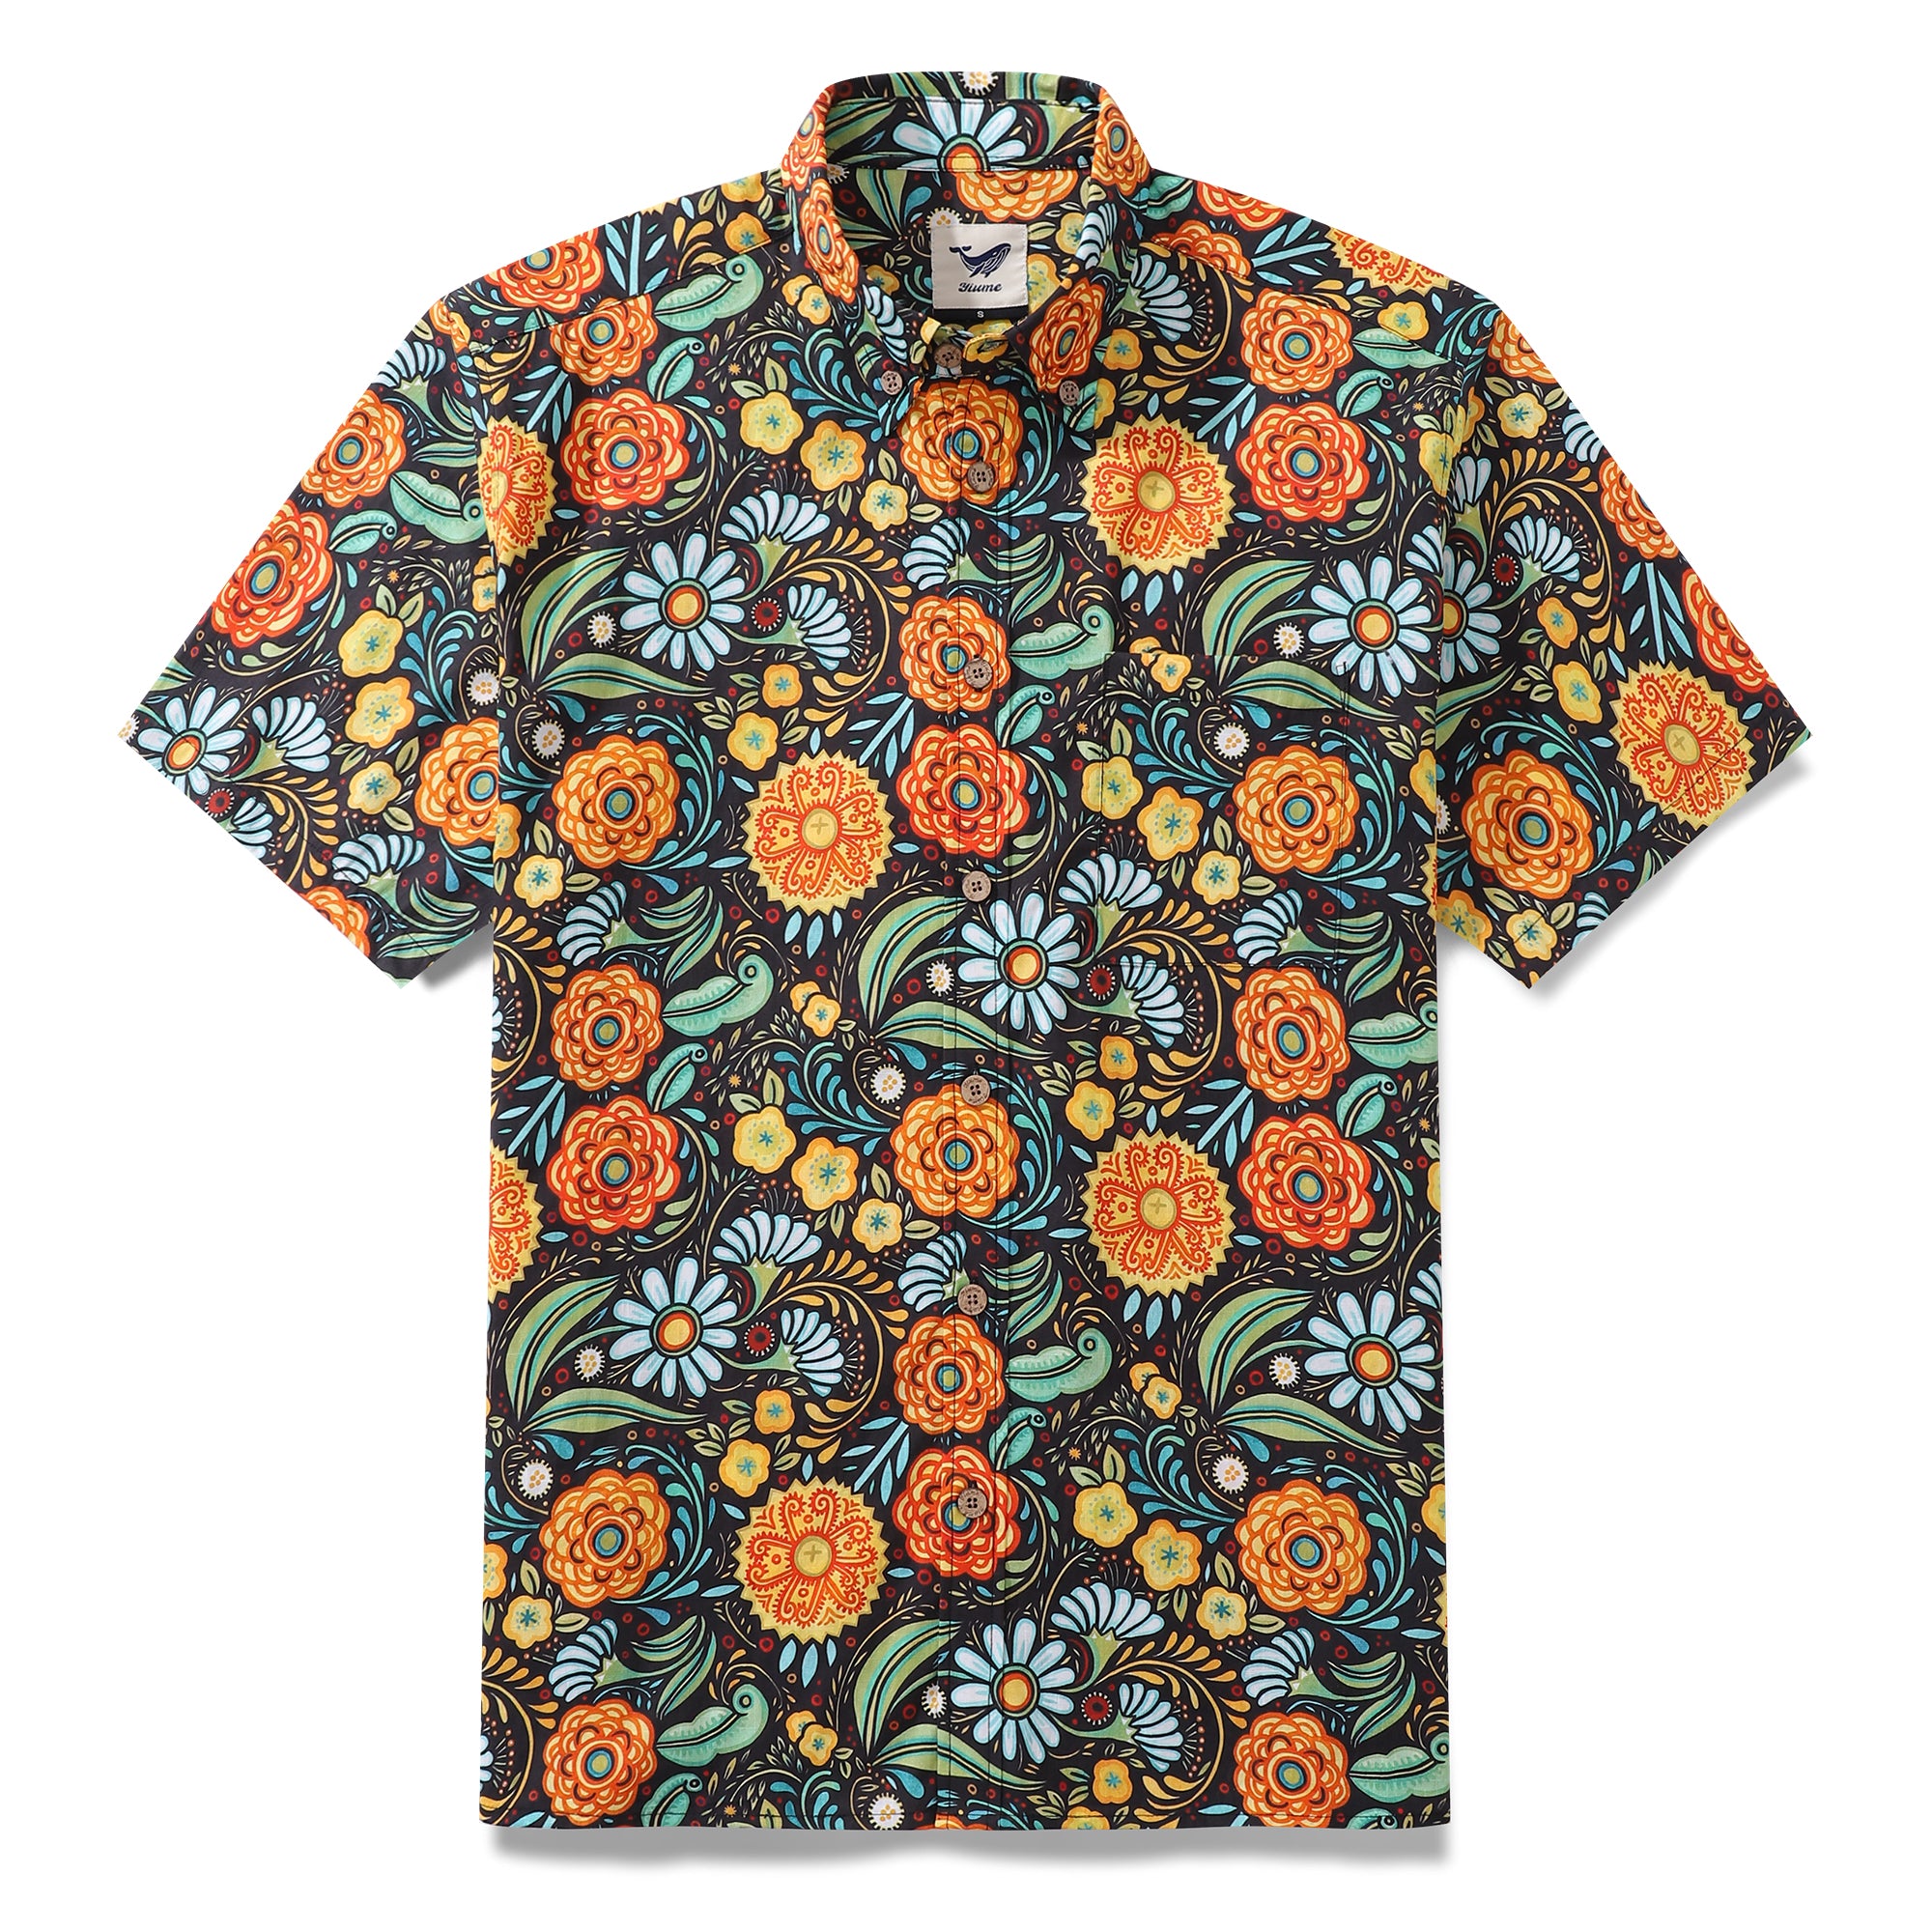 1950s Hawaiian Shirt For Men Flower Button-down Shirt Short Sleeve 100% Cotton Shirt